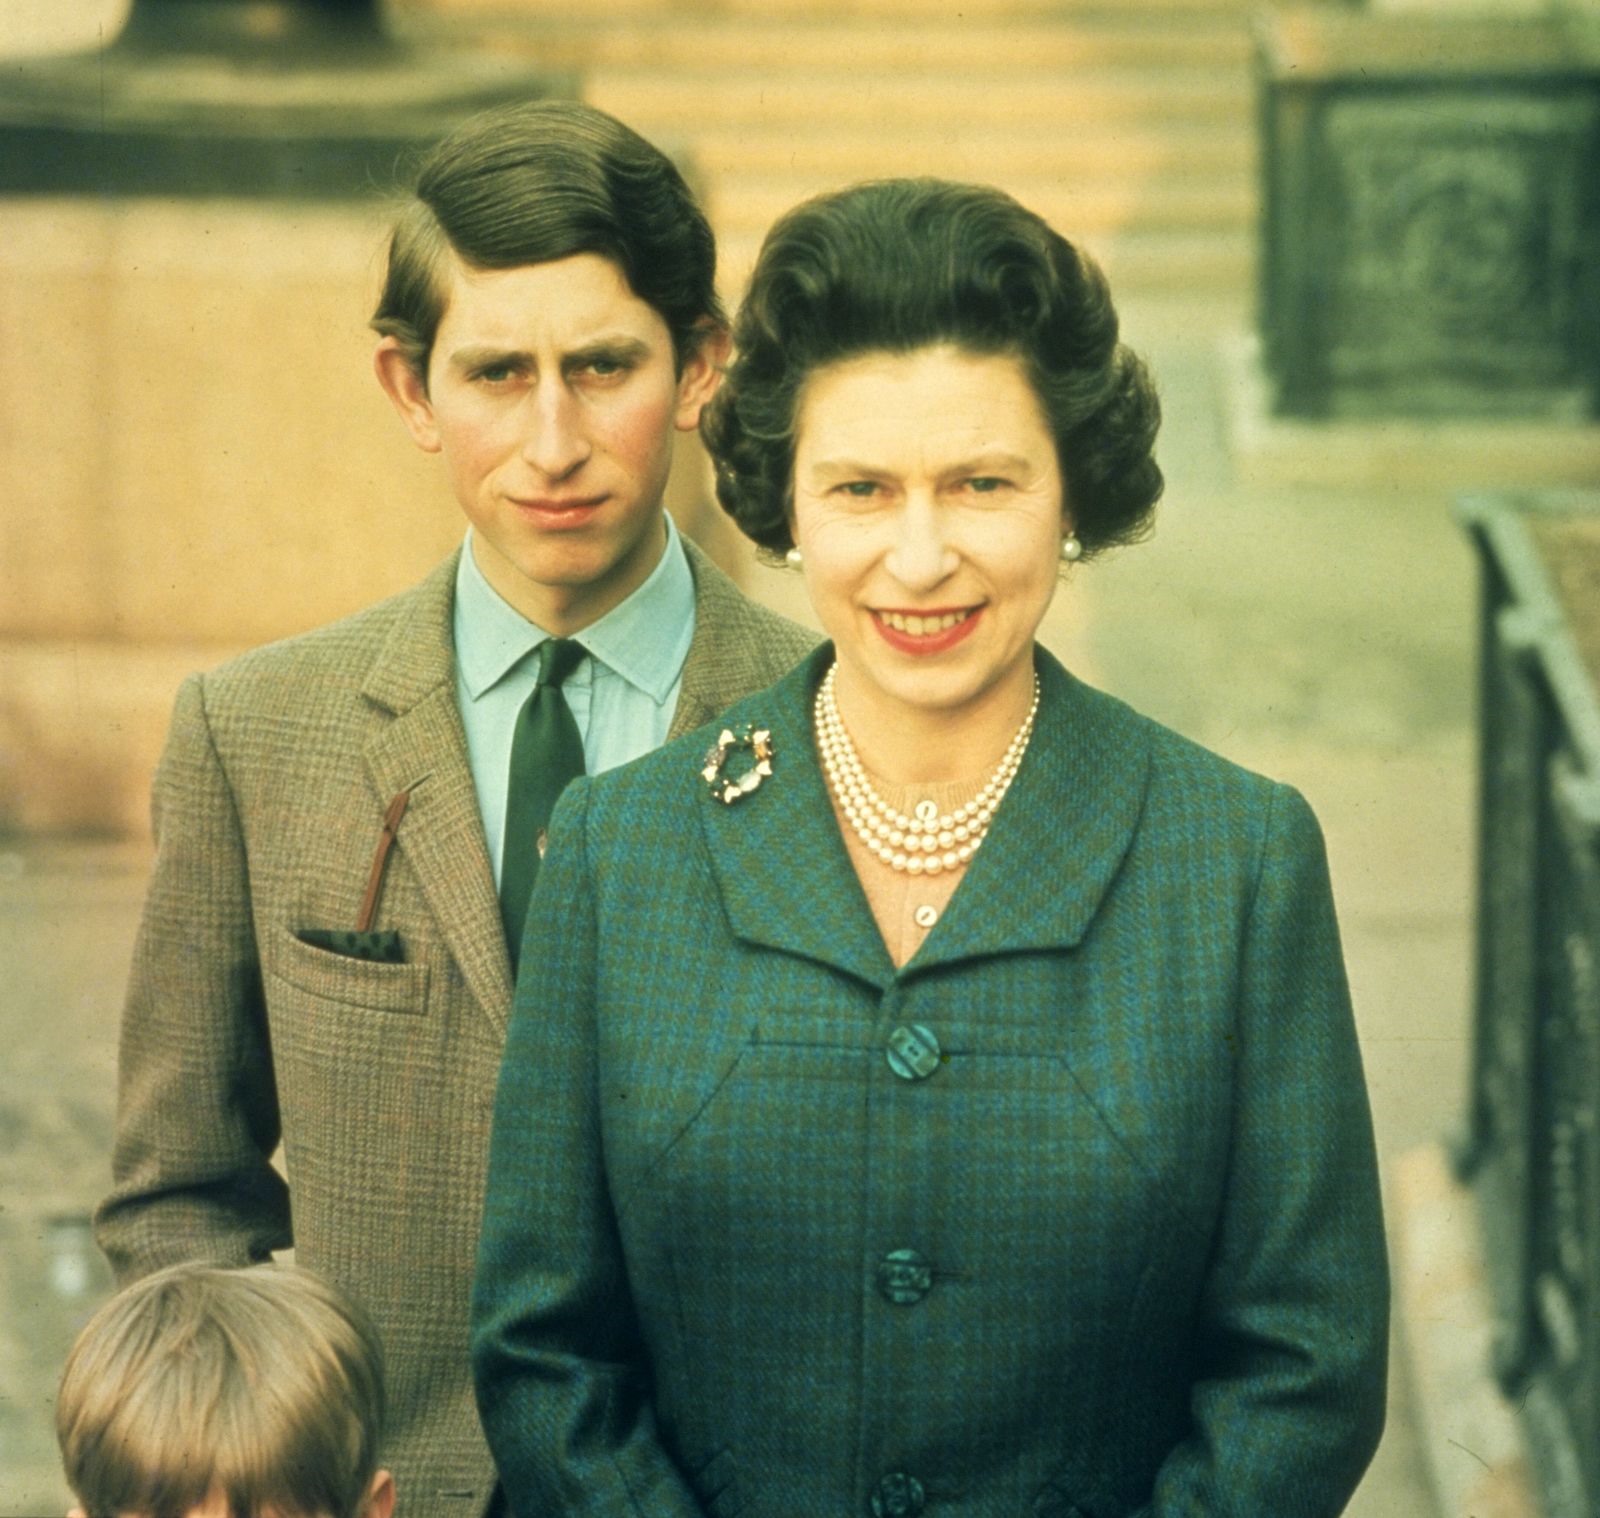 Nữ hoàng Elizabeth II với con trai lớn của bà, Thái tử Charles, năm 1969. Thái tử Charles trở thành Vua Charles III sau khi Nữ hoàng qua đời. Ảnh: Getty